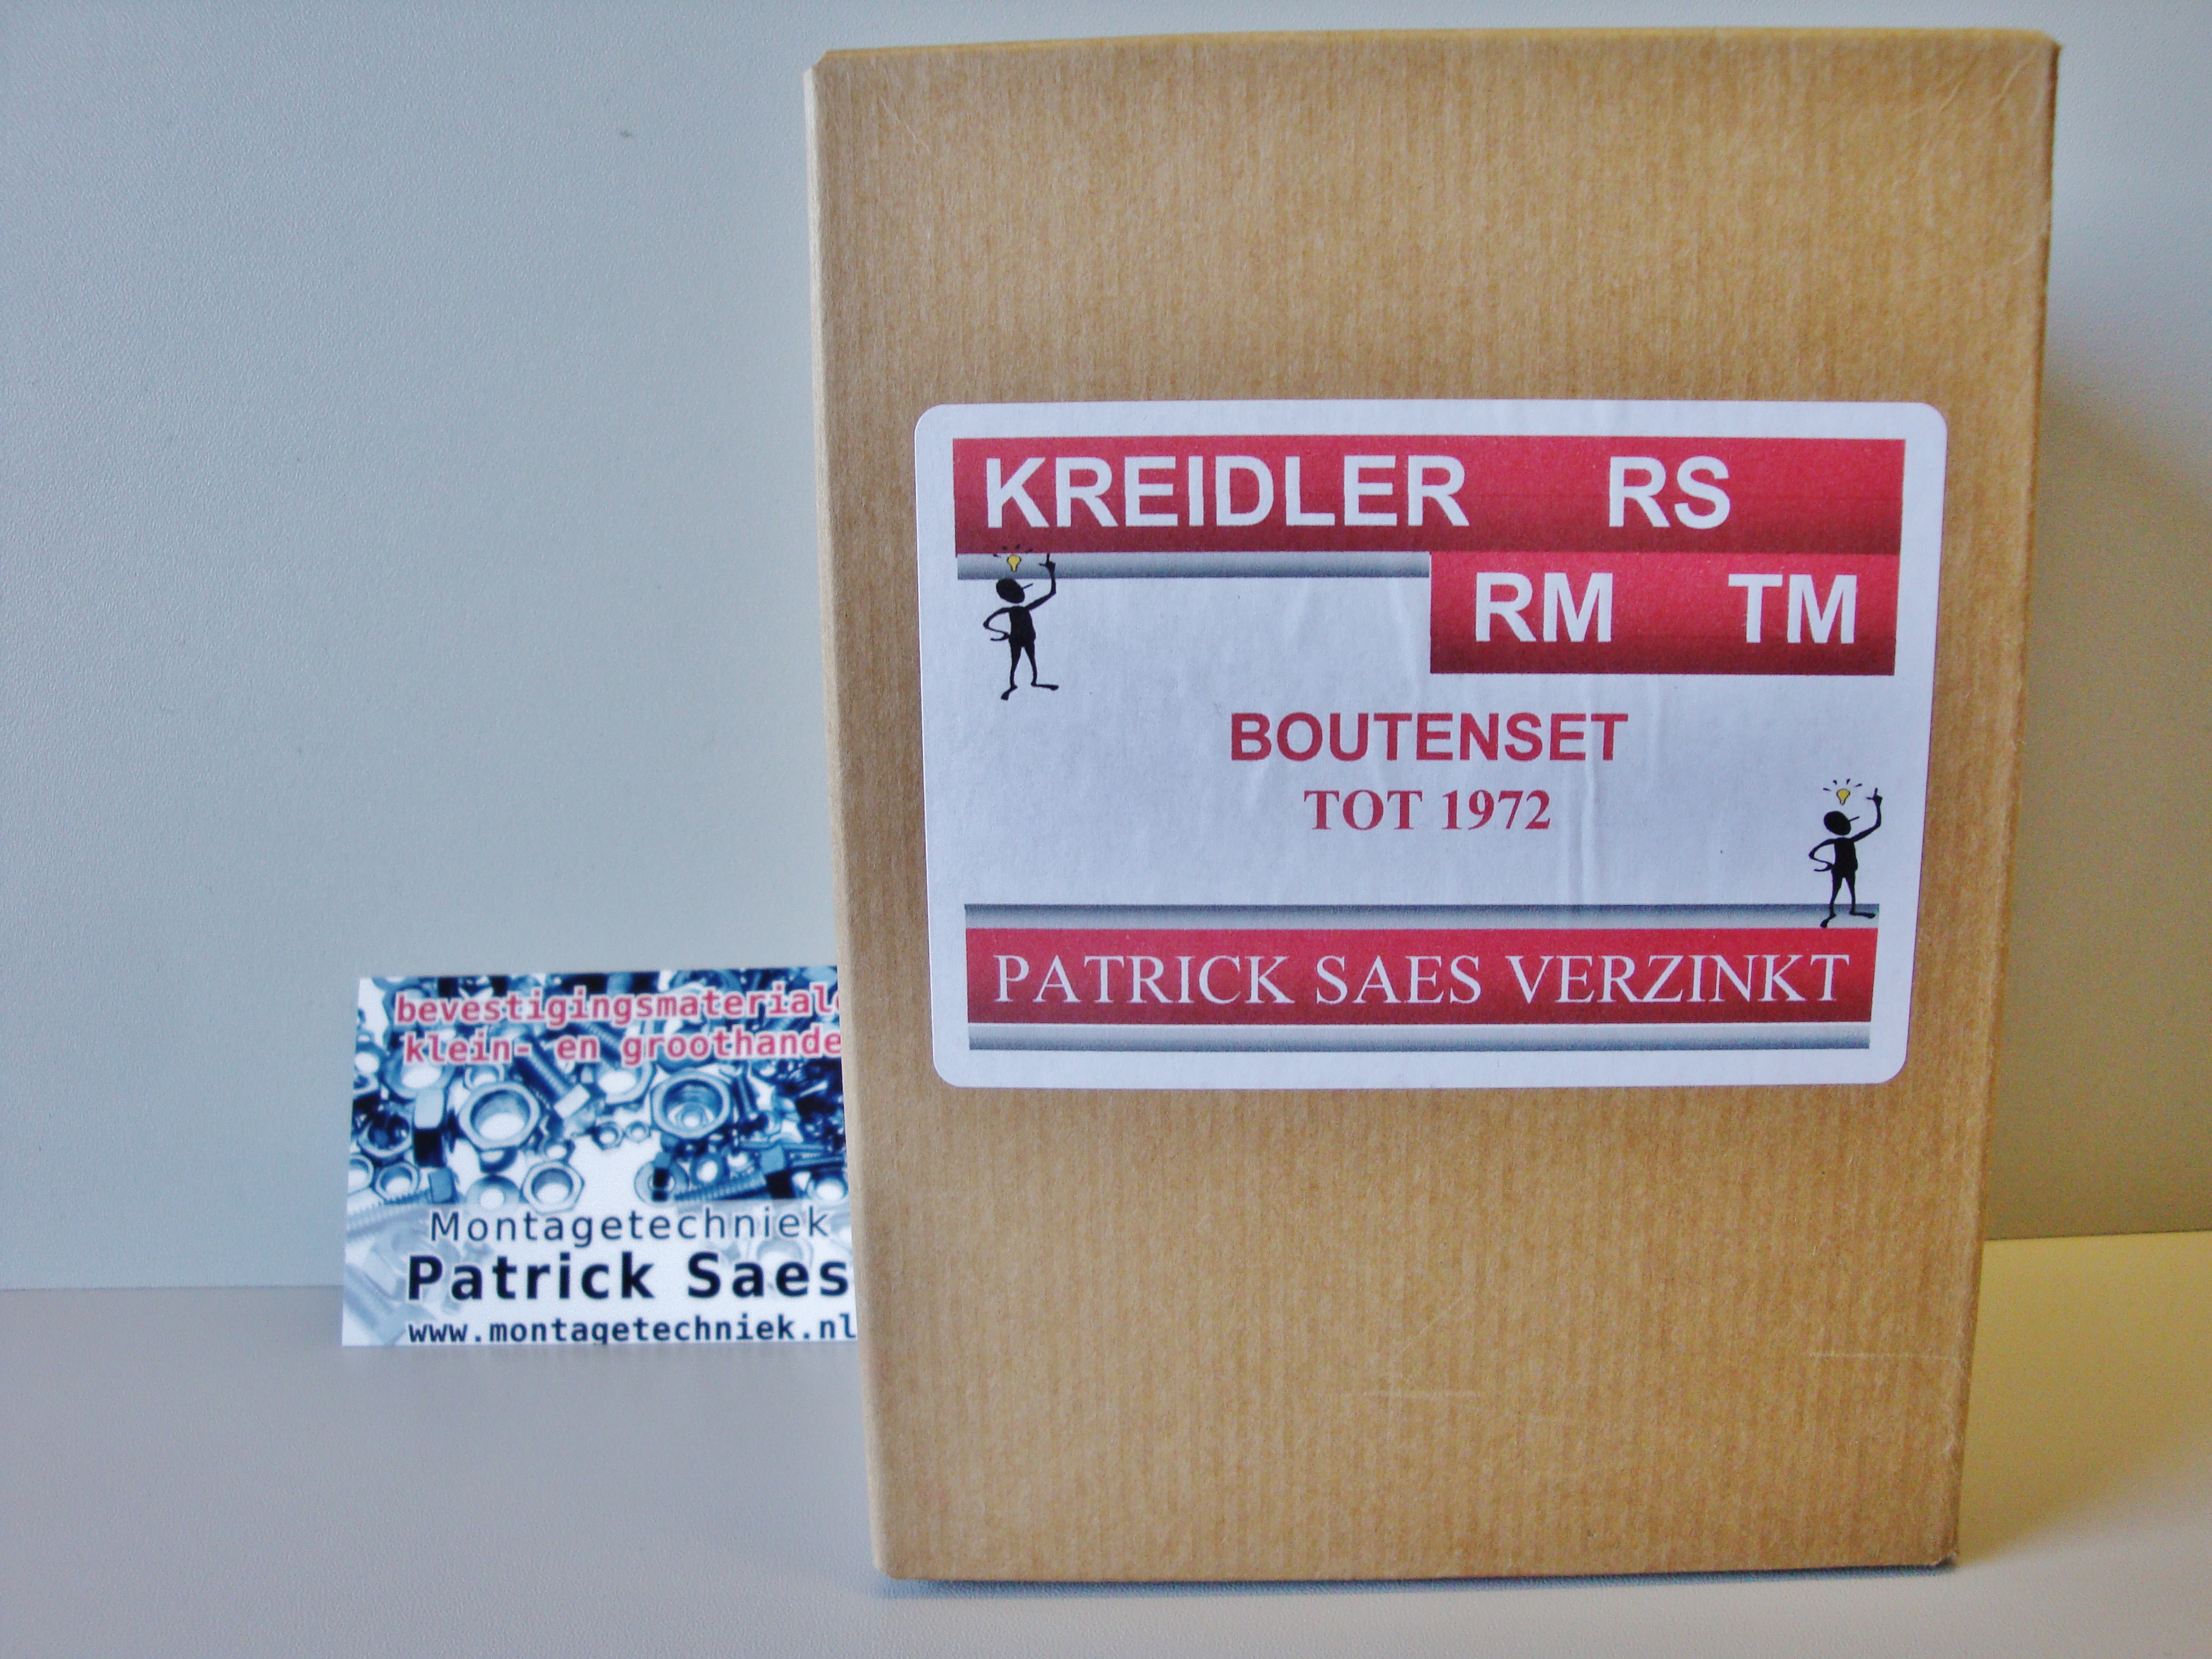 Galvanized bolt kit Kreidler rs / rm / tm to 1972